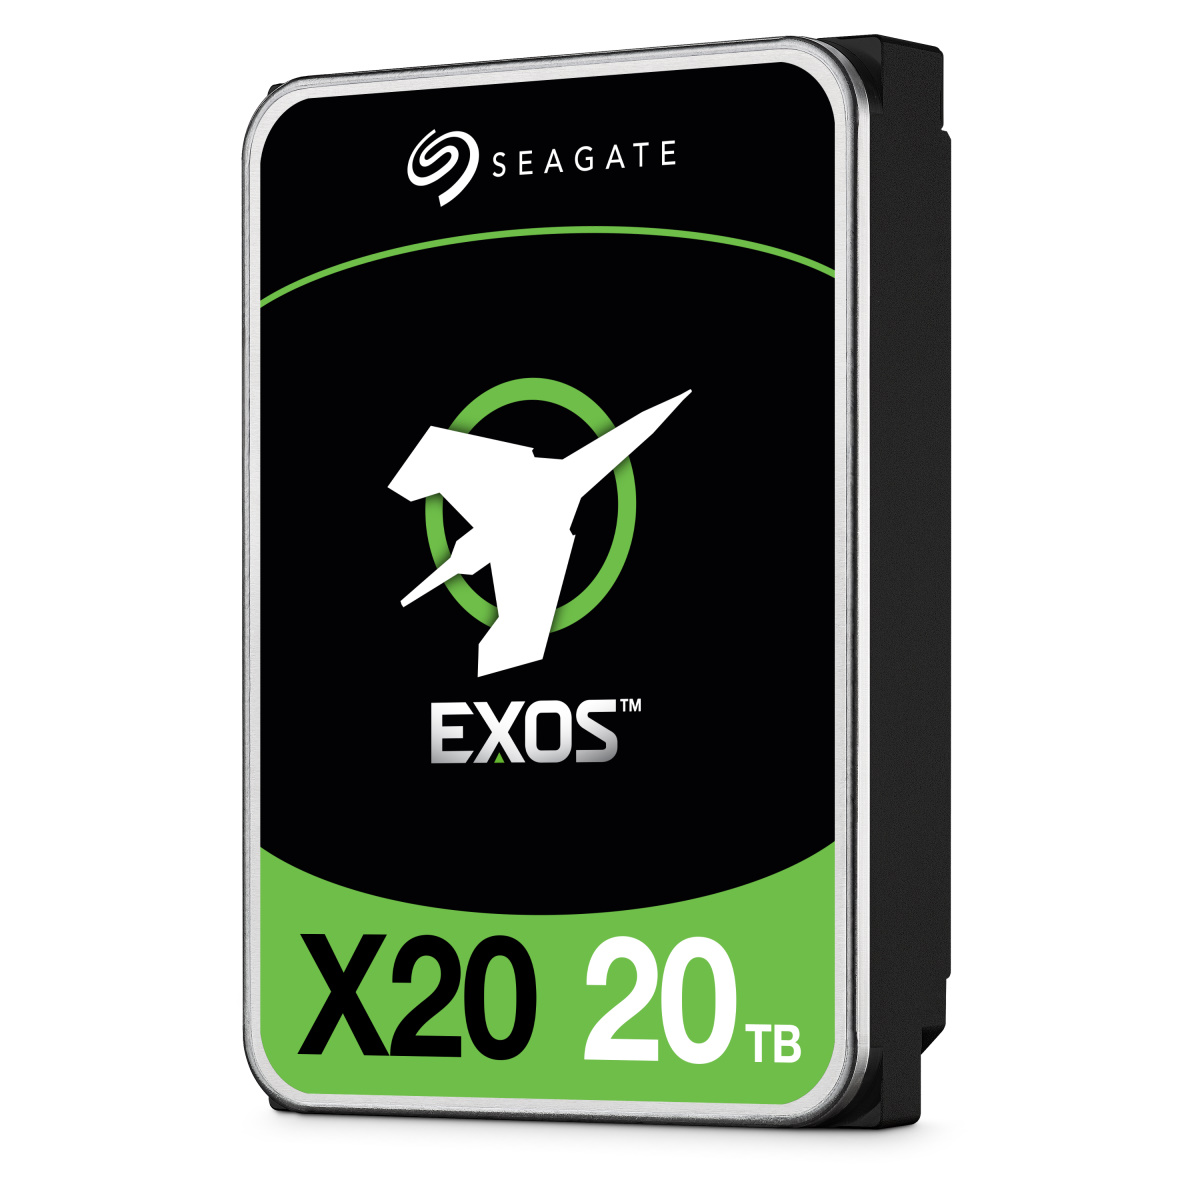 Seagate Exos X20 20TB。